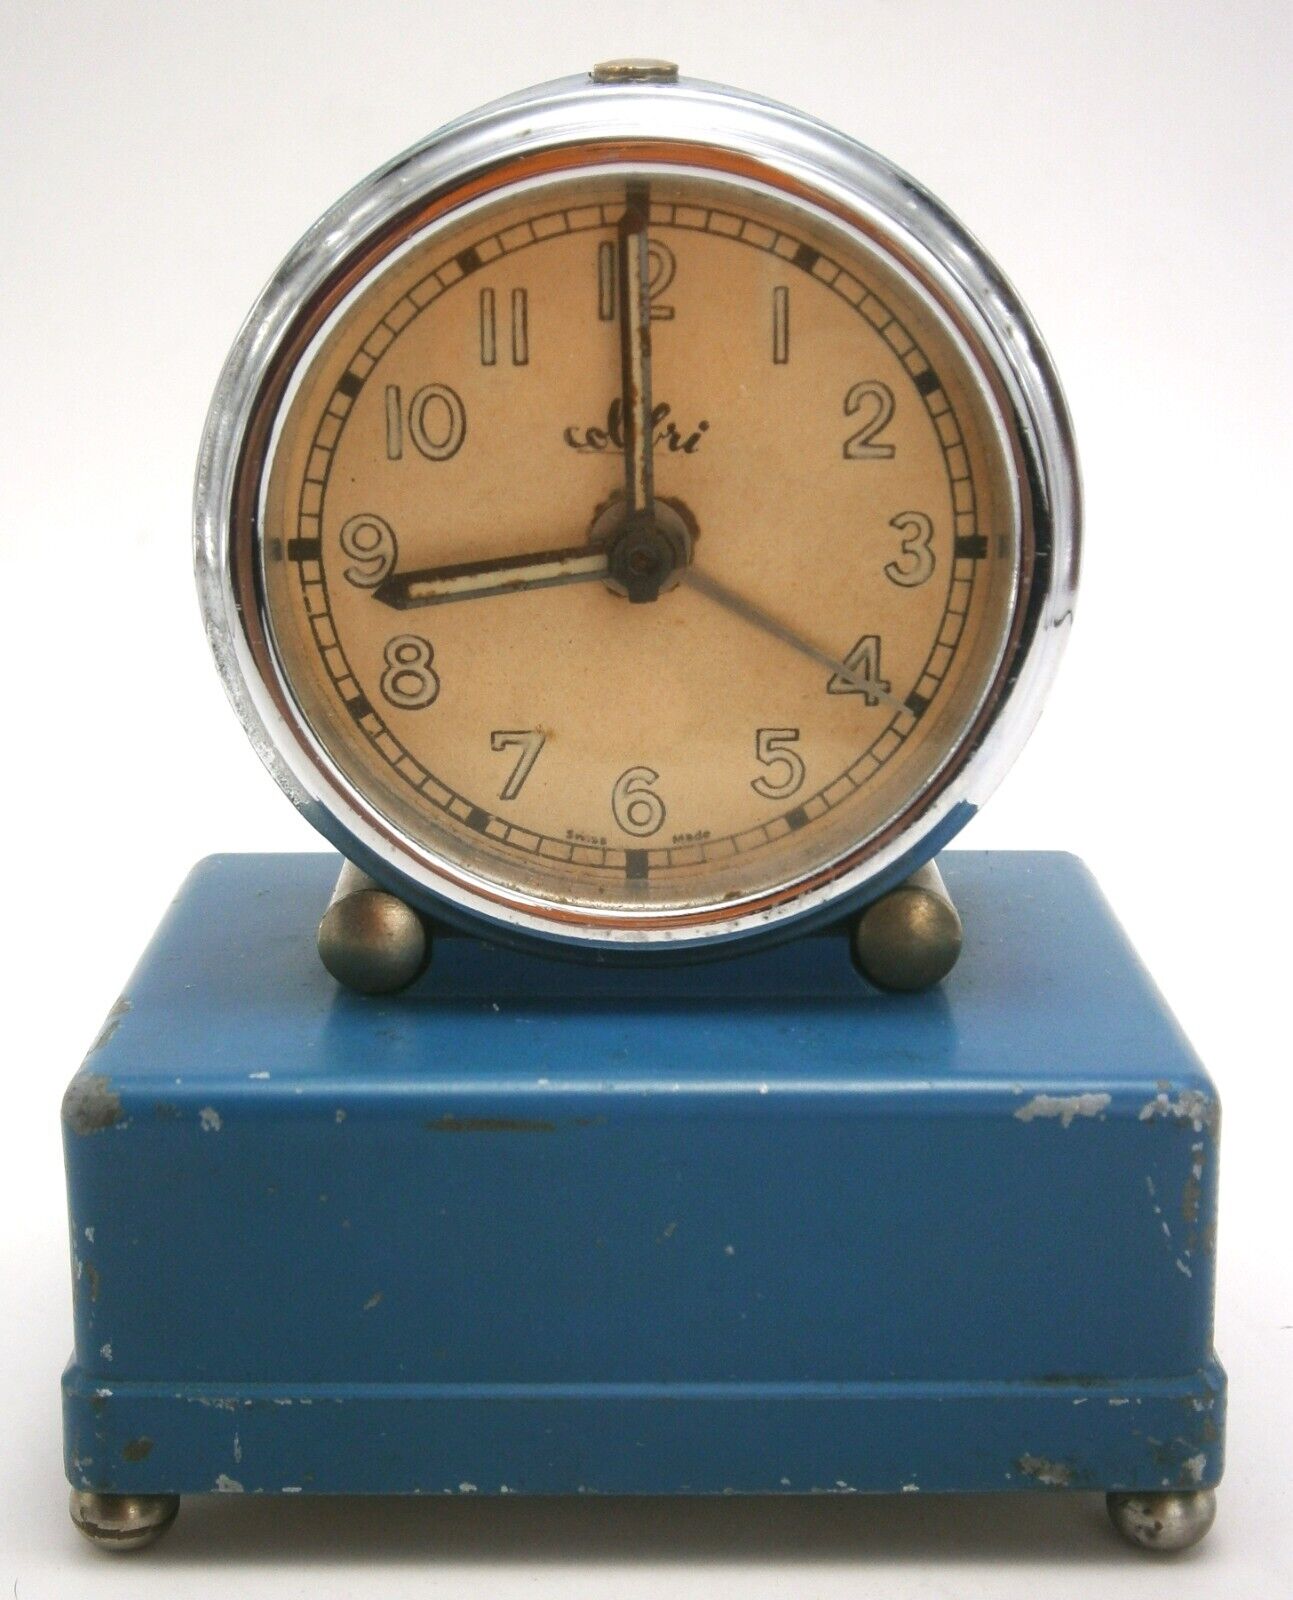 Antique Colibri Swiss Made Alarm Clock with Music Box Alarm